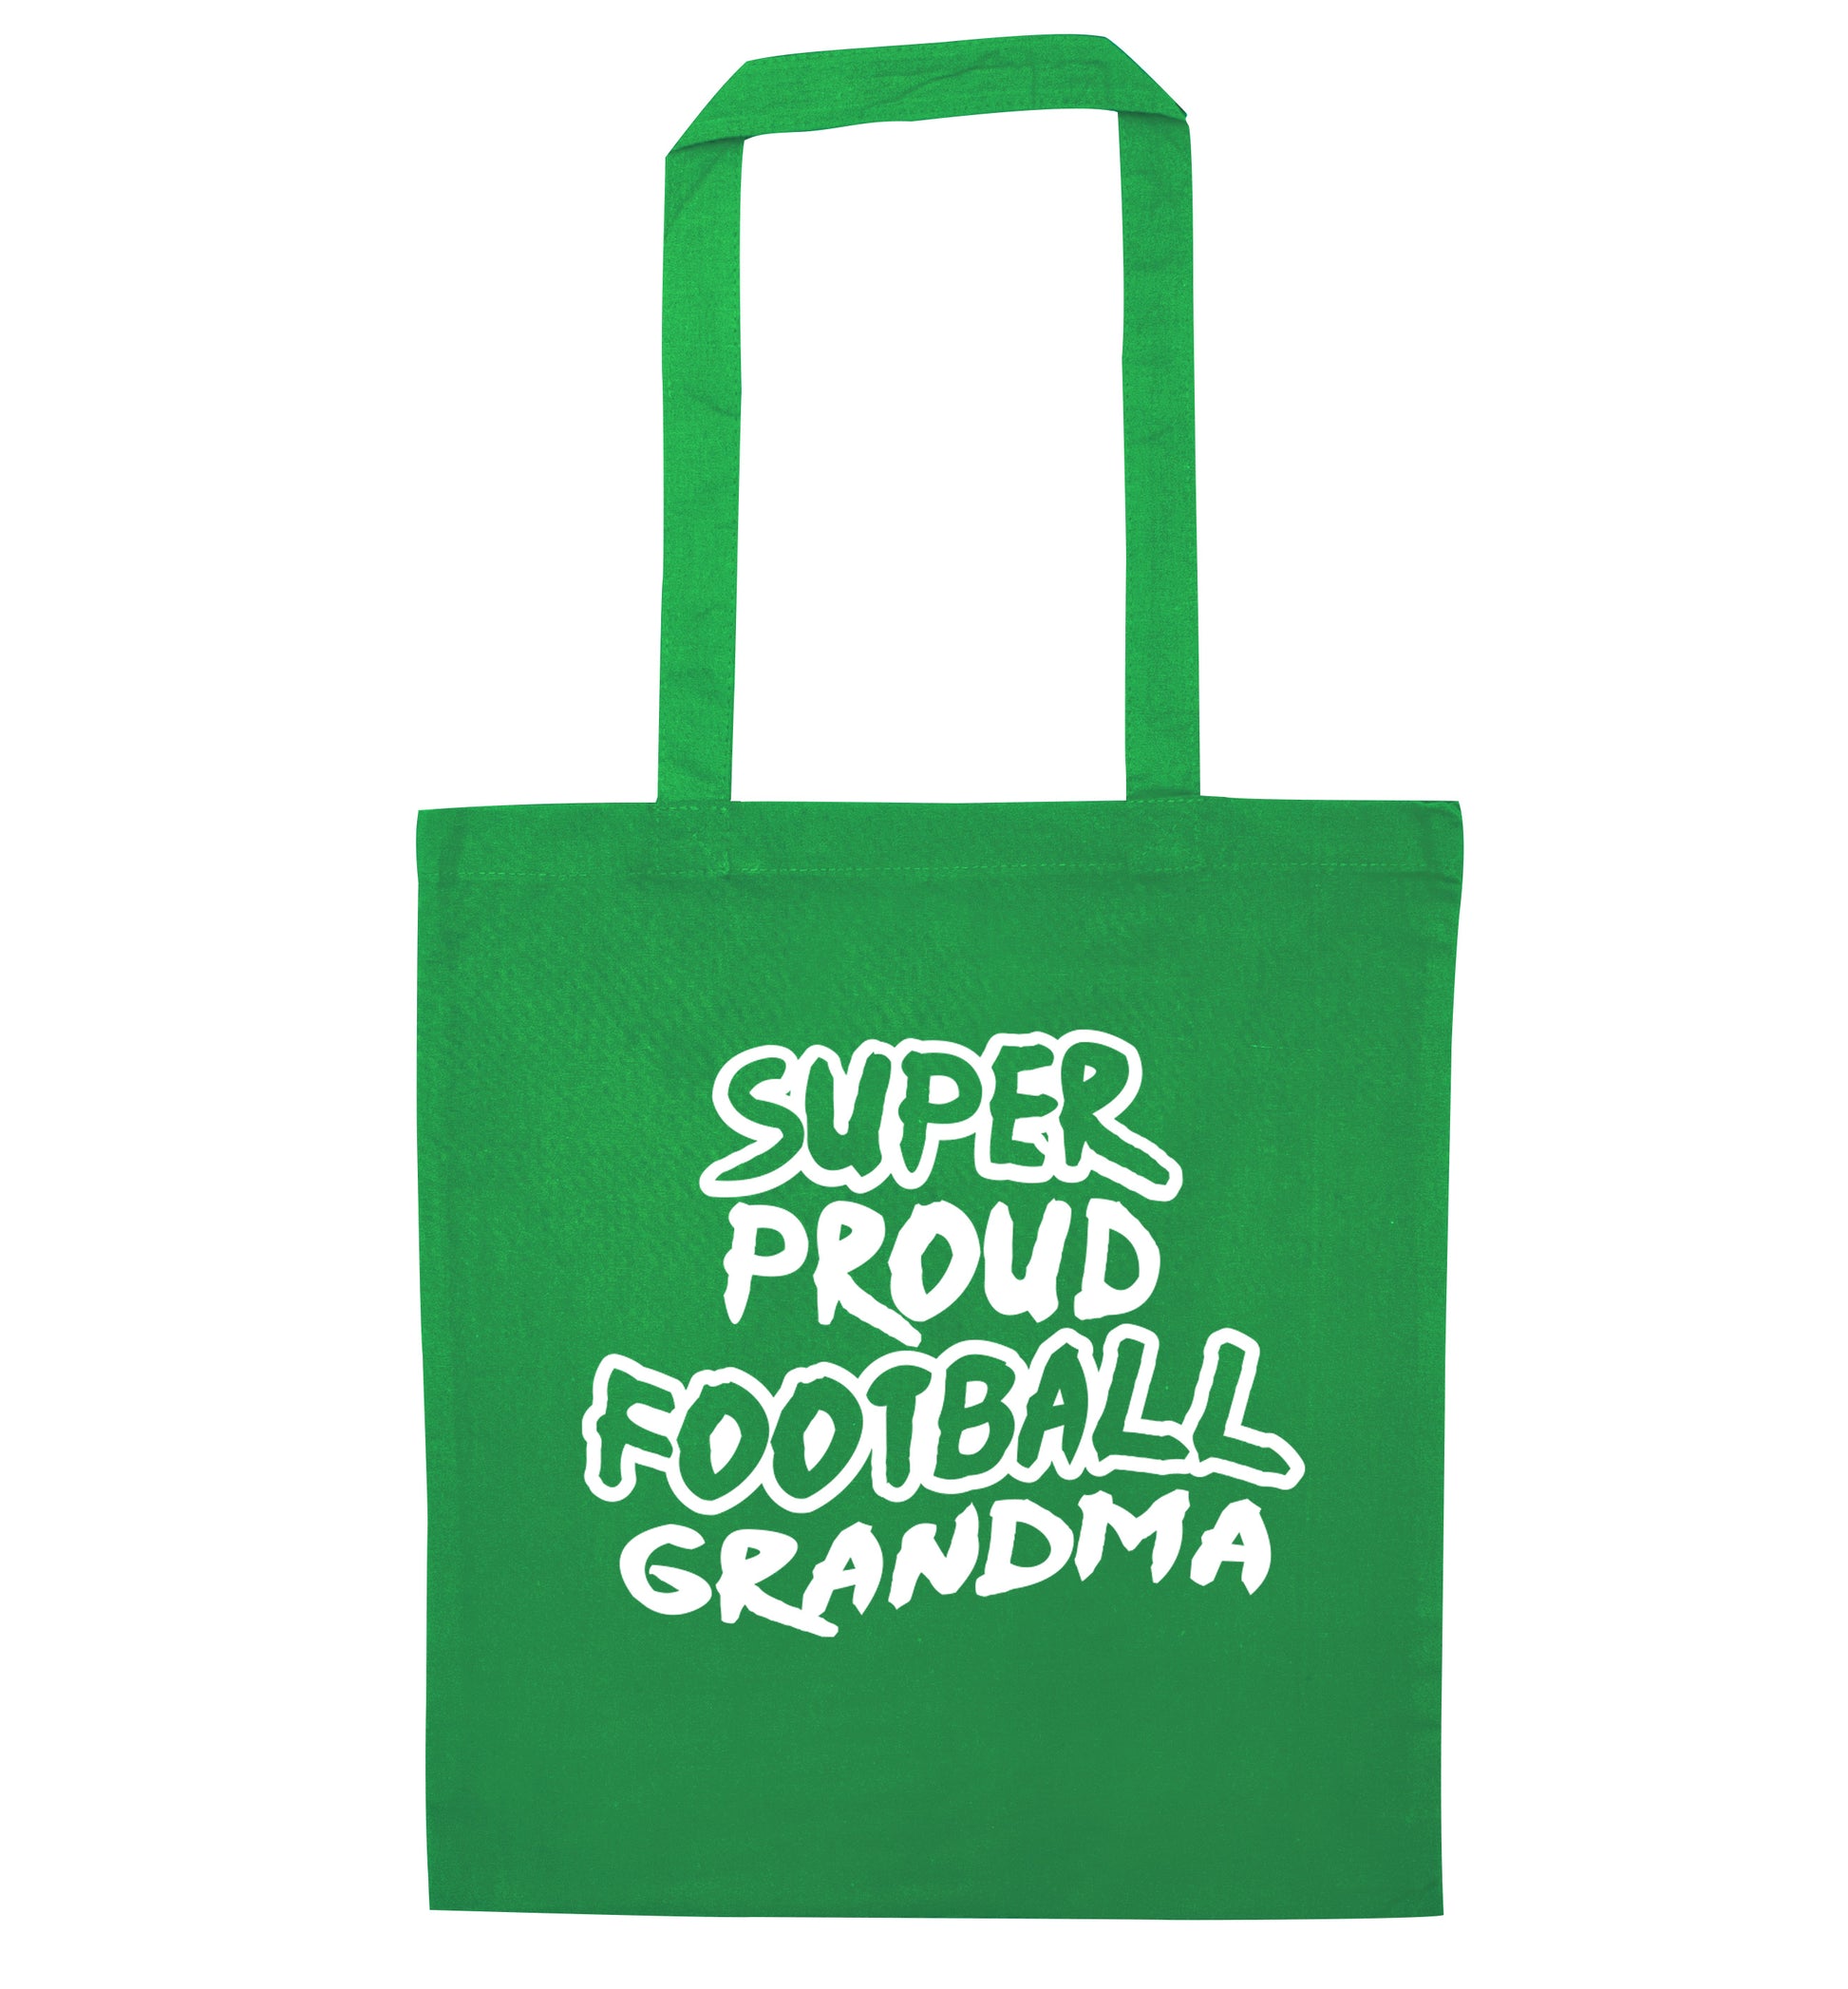 Super proud football grandma green tote bag